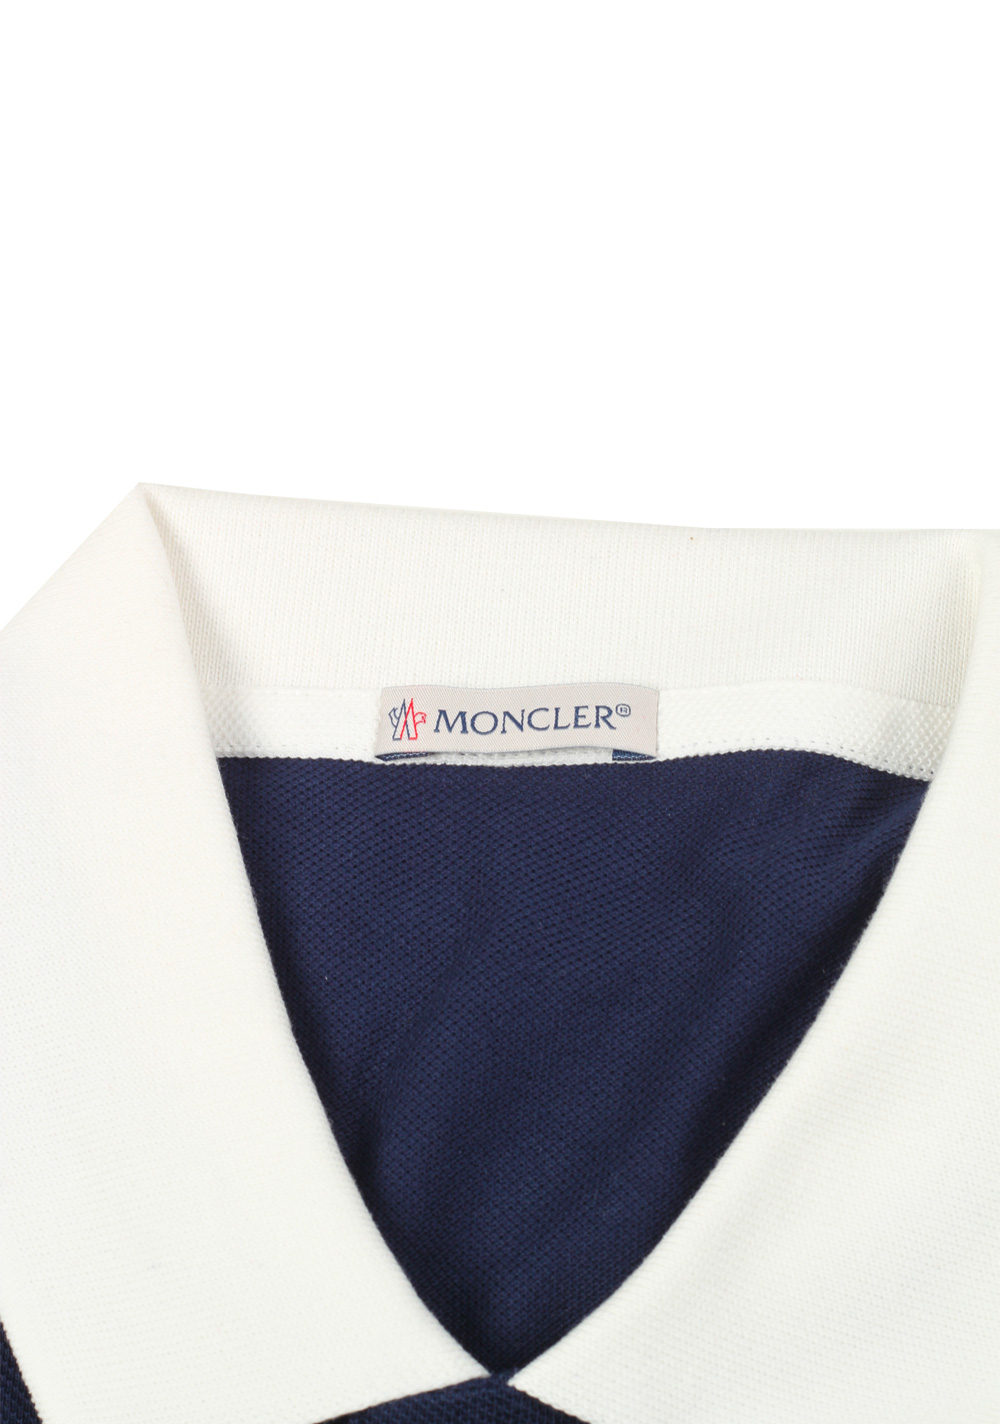 Moncler Navy Polo Shirt Size M / 38R U.S. | Costume Limité